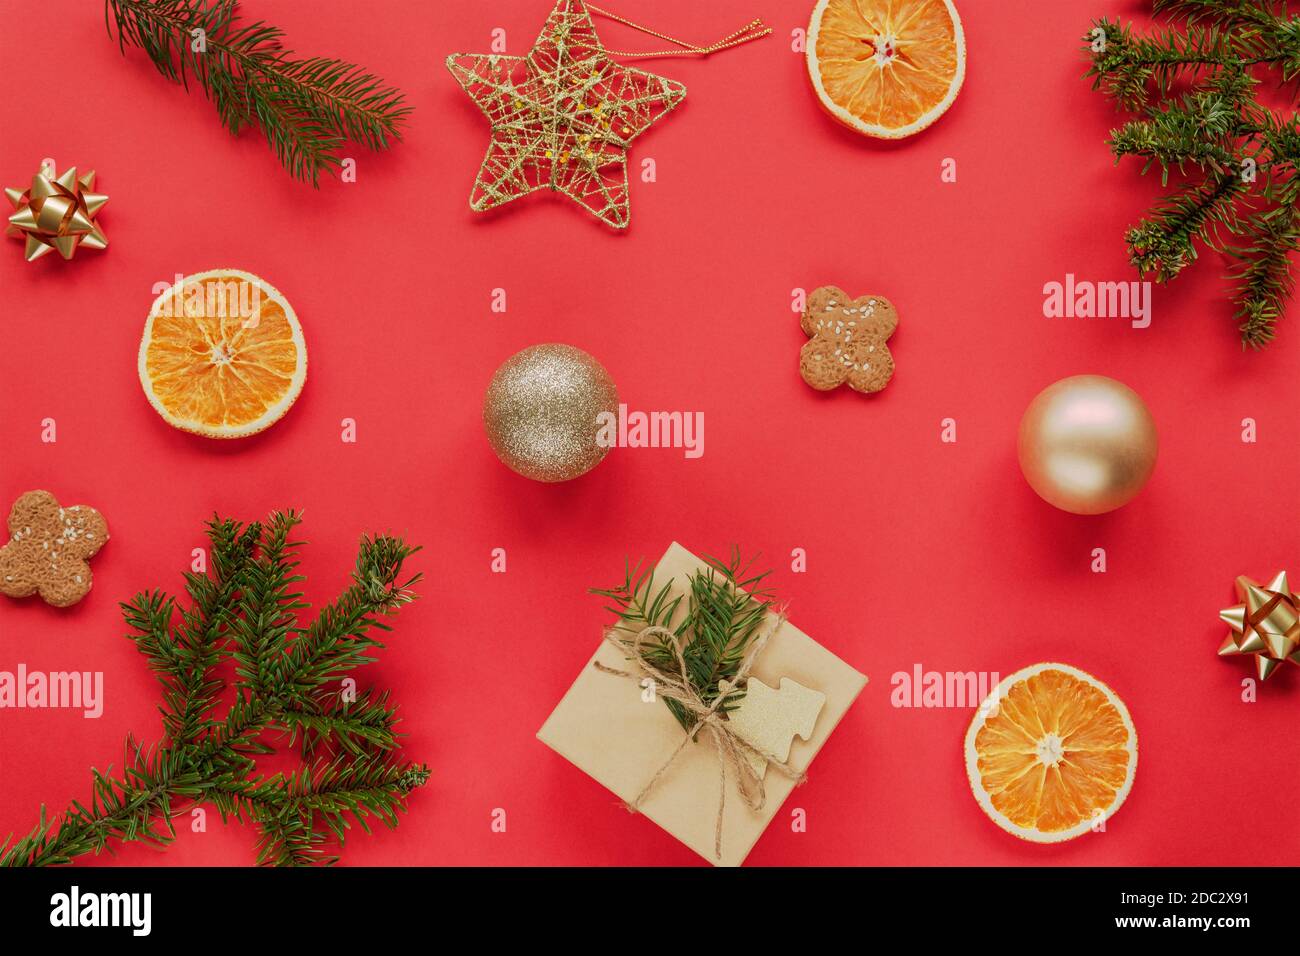 Appartamento di Natale con rami di abete rosso, un regalo, biscotti, arance secche e decorazioni di Natale su sfondo rosso. Concetto di nuovo anno. Vista dall'alto, piatta Foto Stock